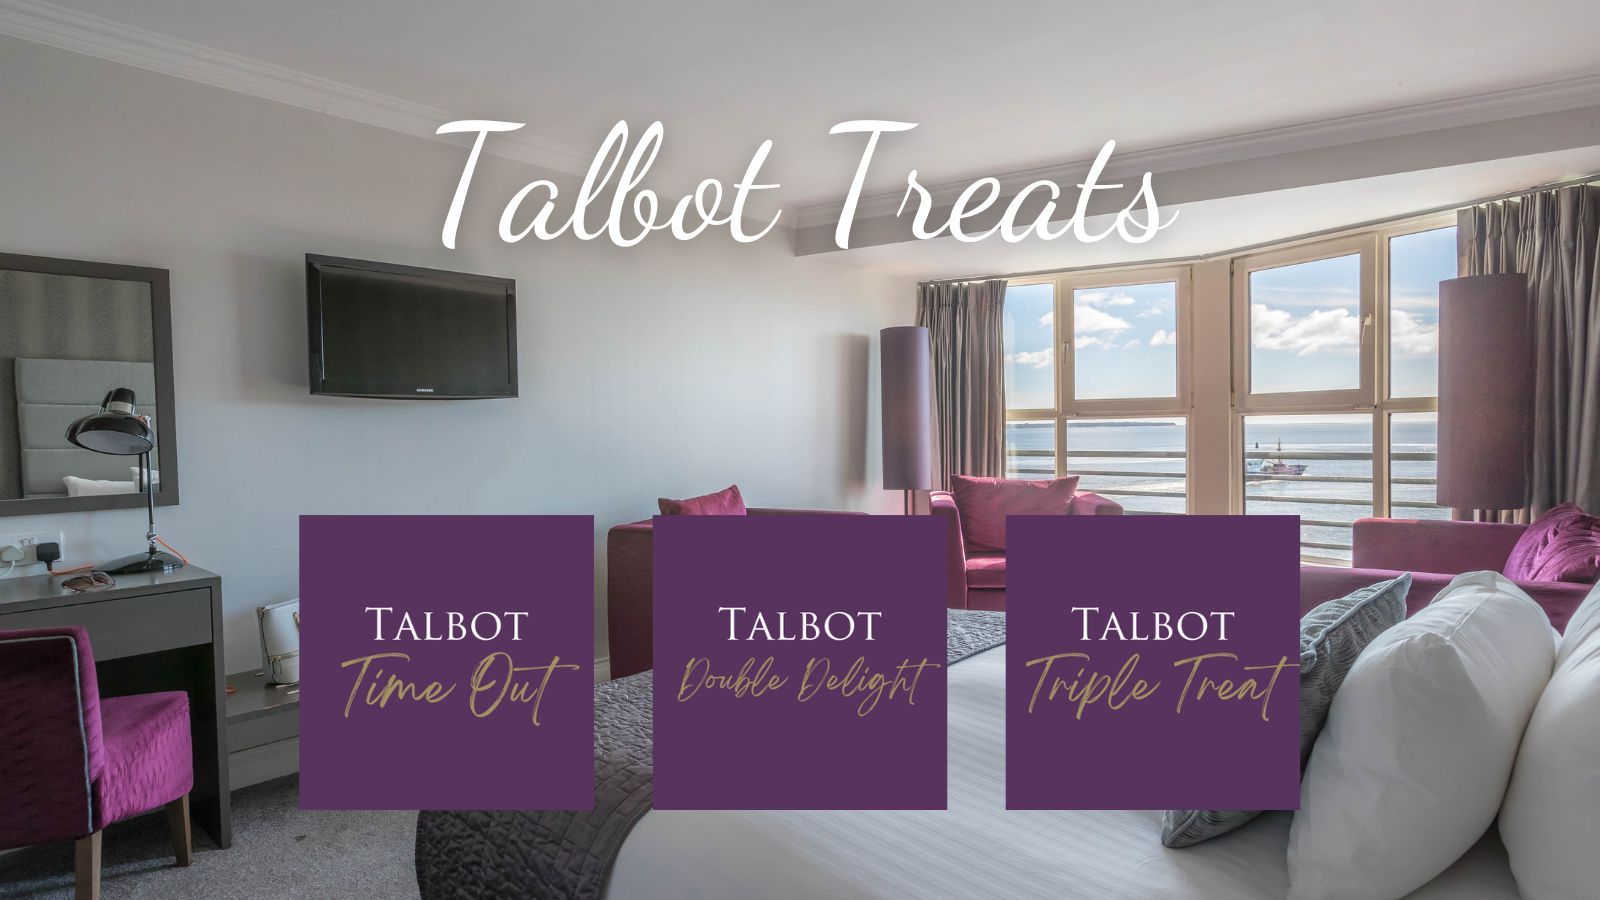 Talbot Treats (2)